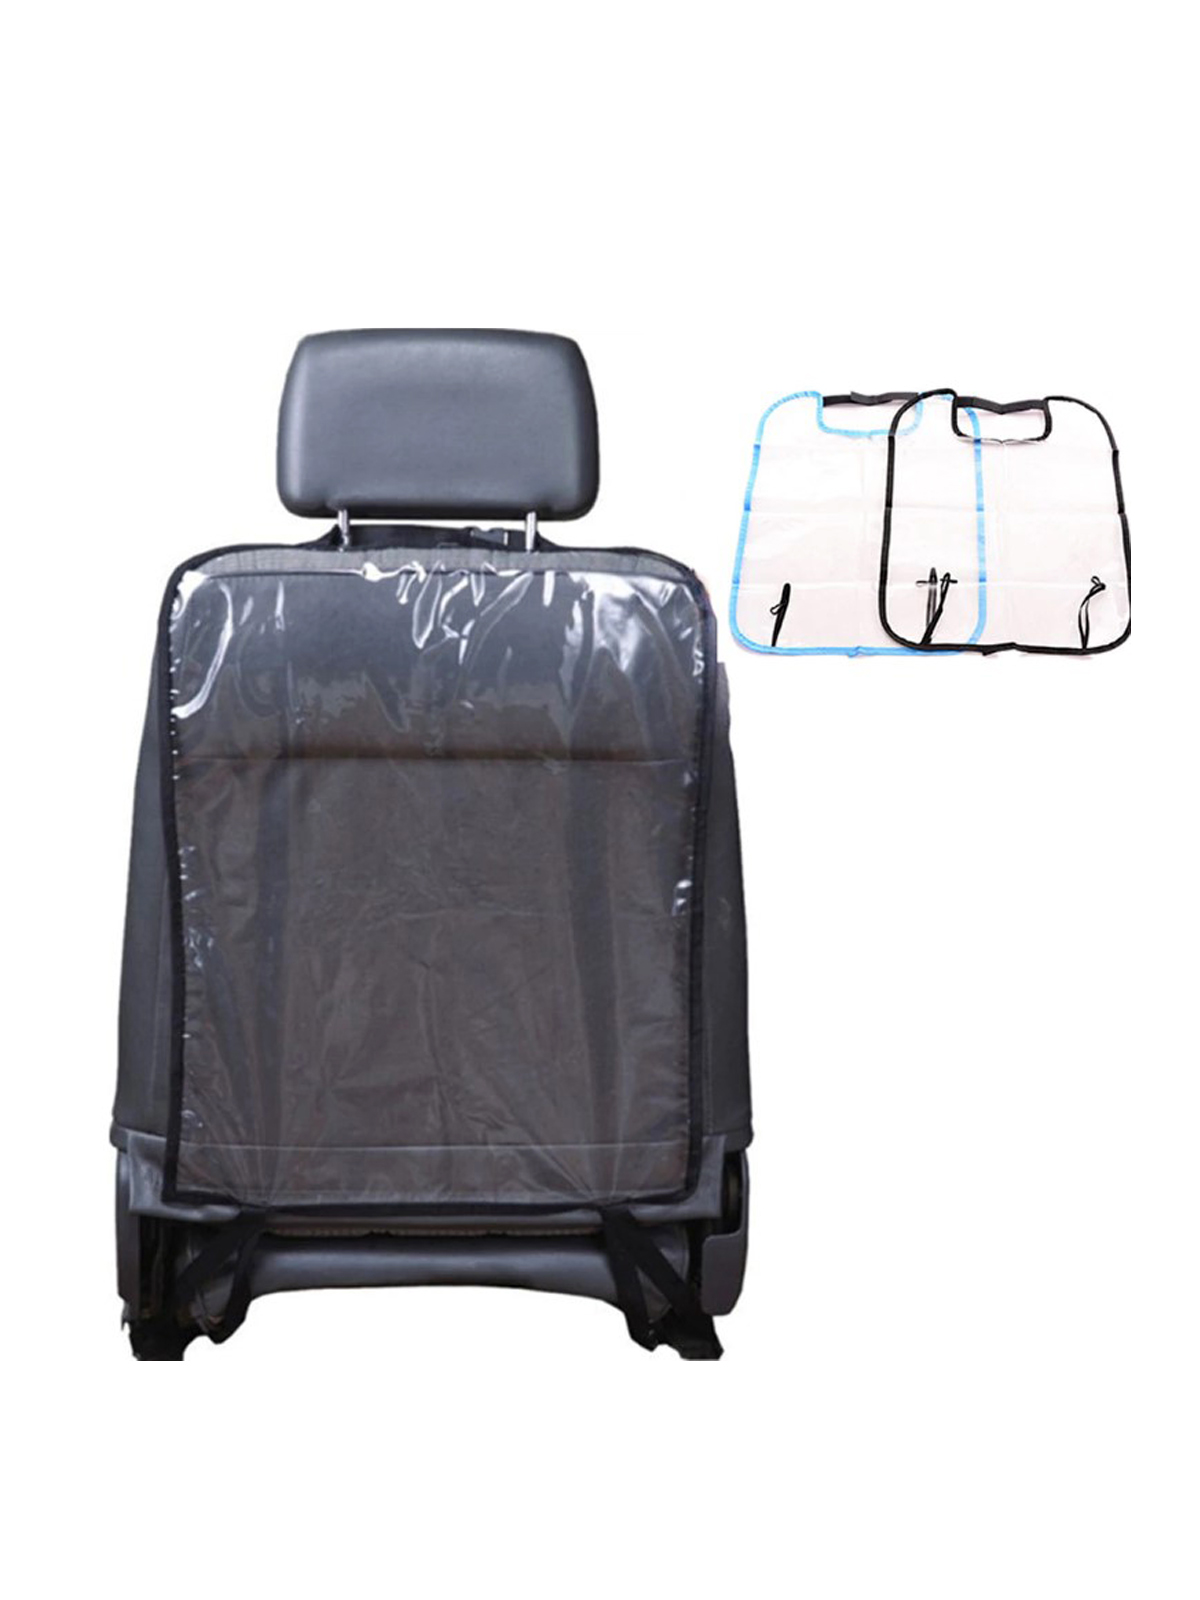 Защита для спинки сидения авто прозрачная, 55,5*40 см